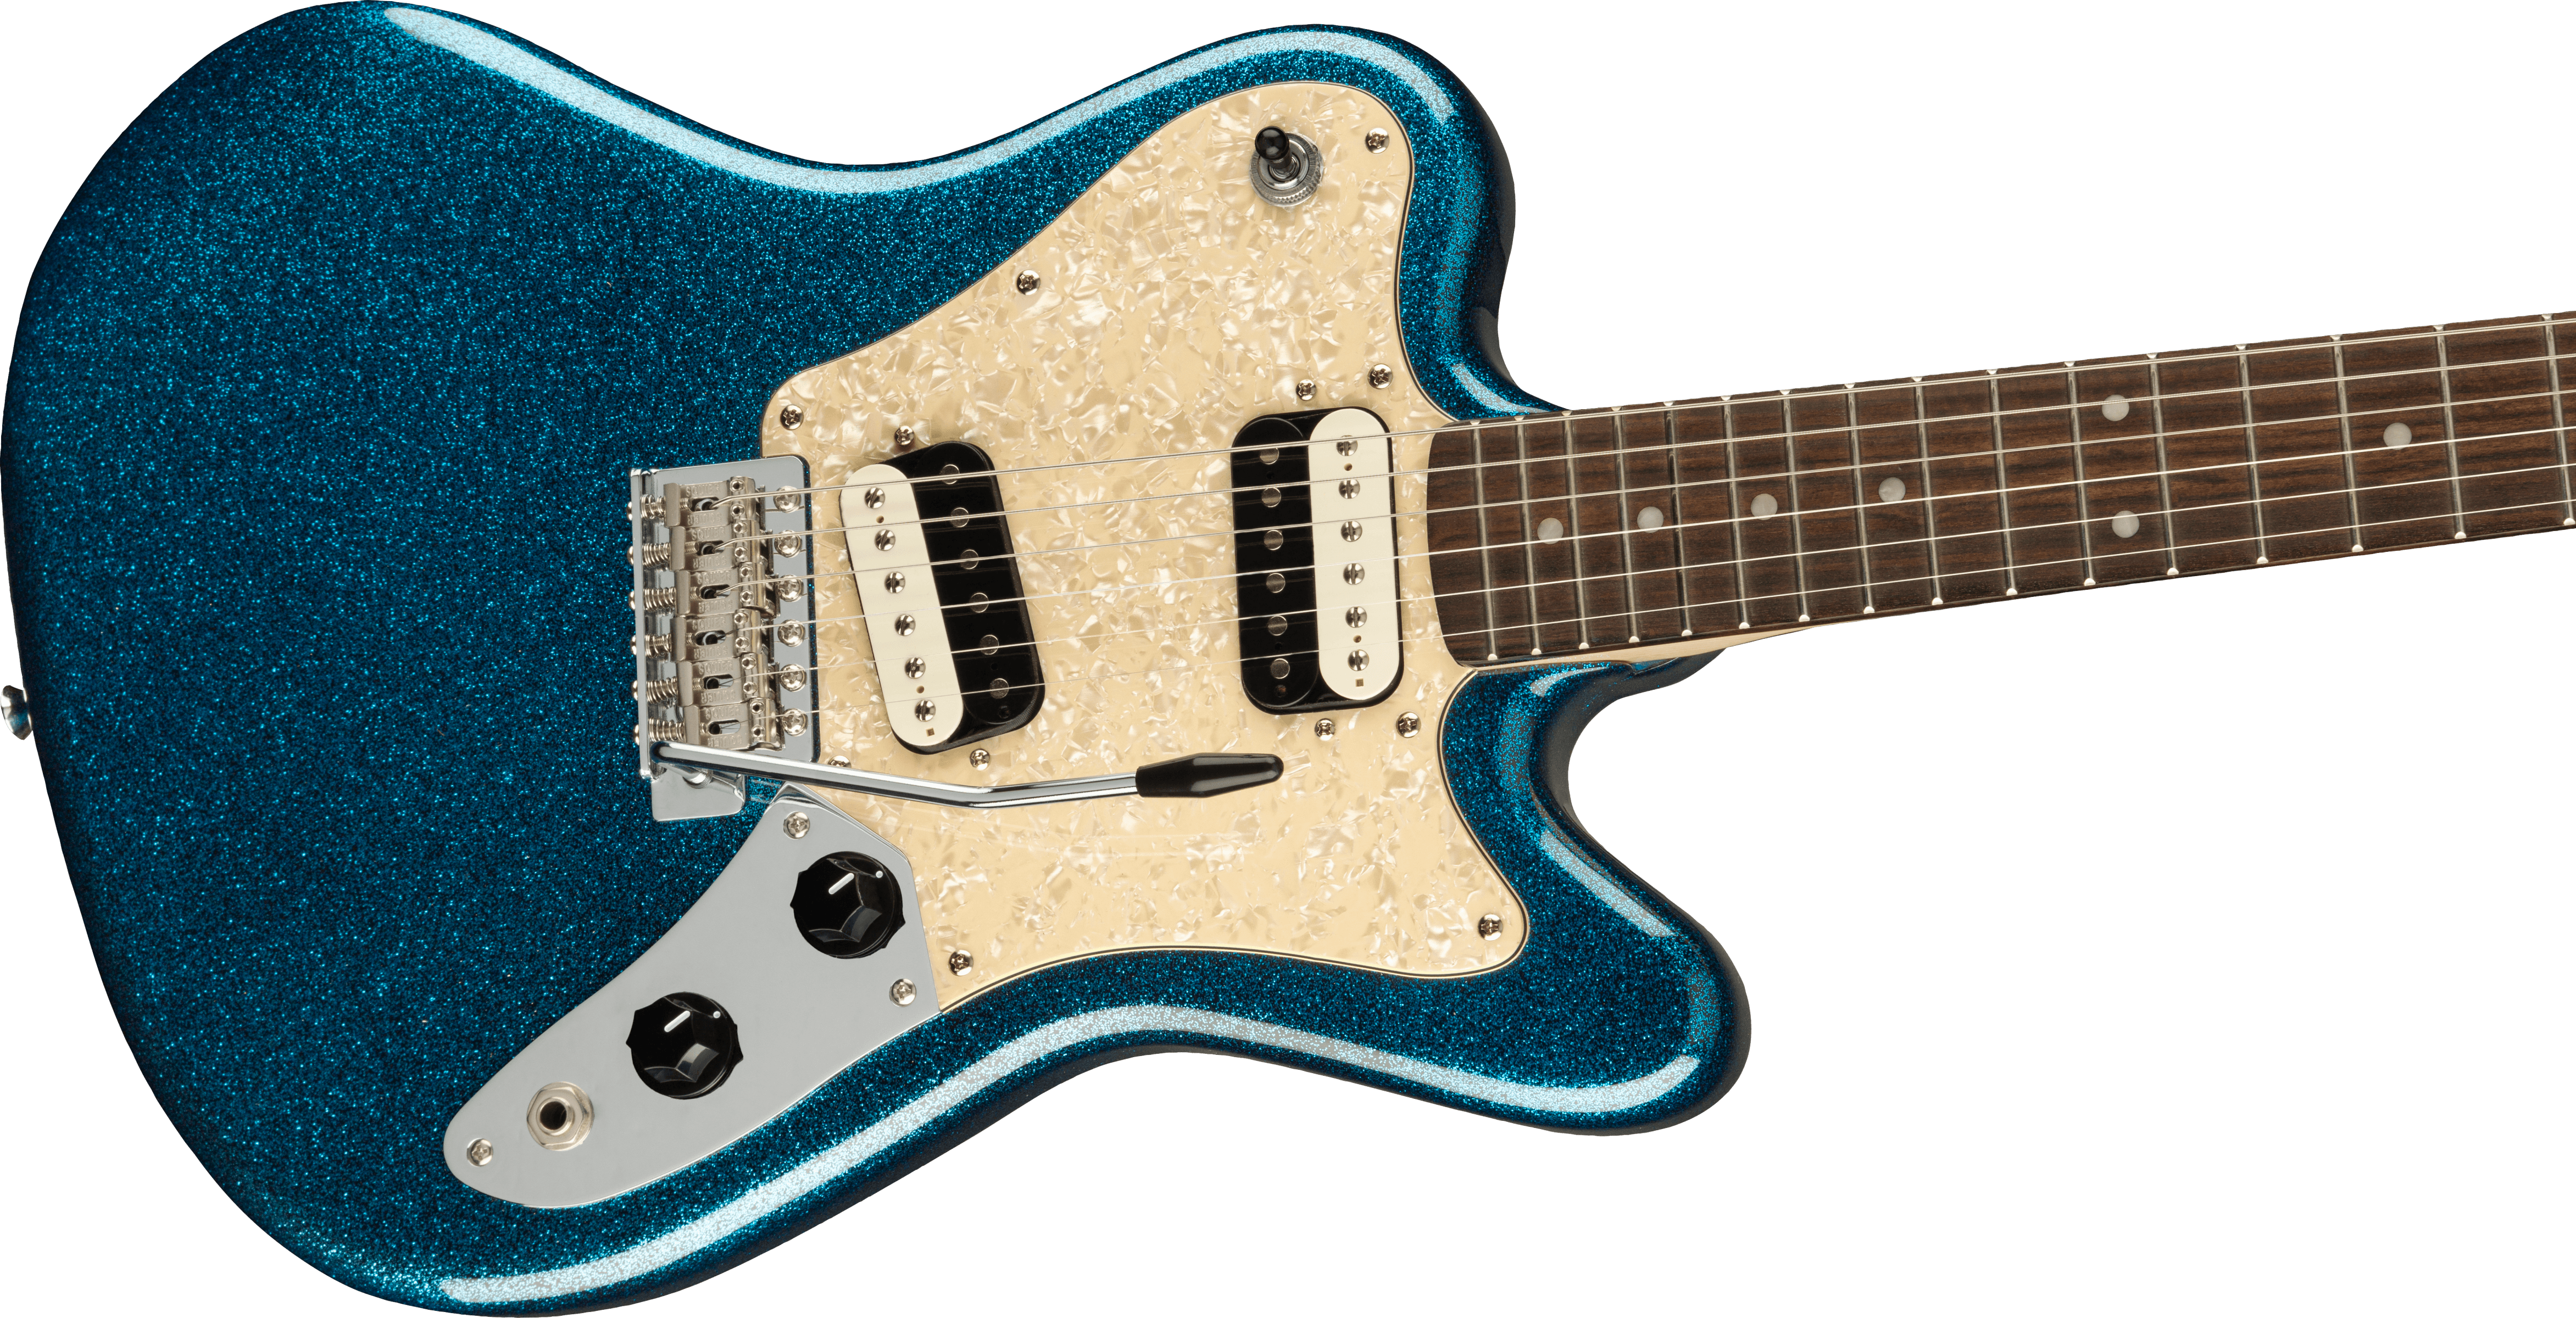 Fender Squier Paranormal Super-Sonic Laurel Fingerboard, Pearloid Pickguard, Blue Sparkle